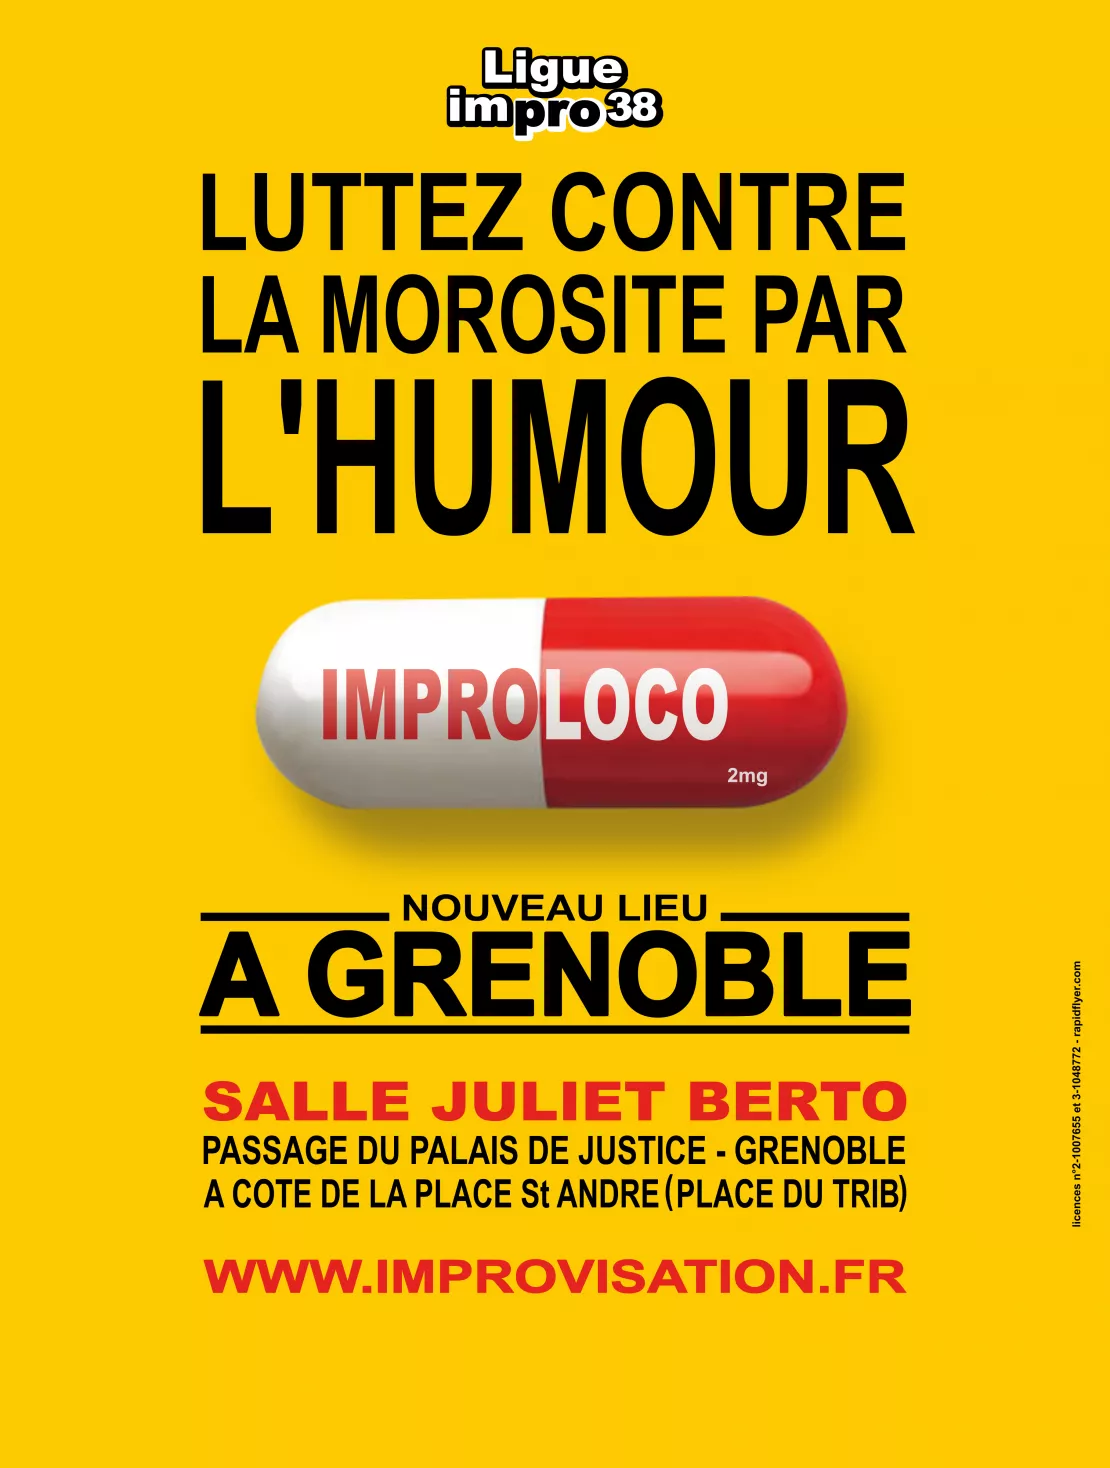 Improloco samedi 23 Juin à 20h30 à la salle Juliet BERTO à Grenoble